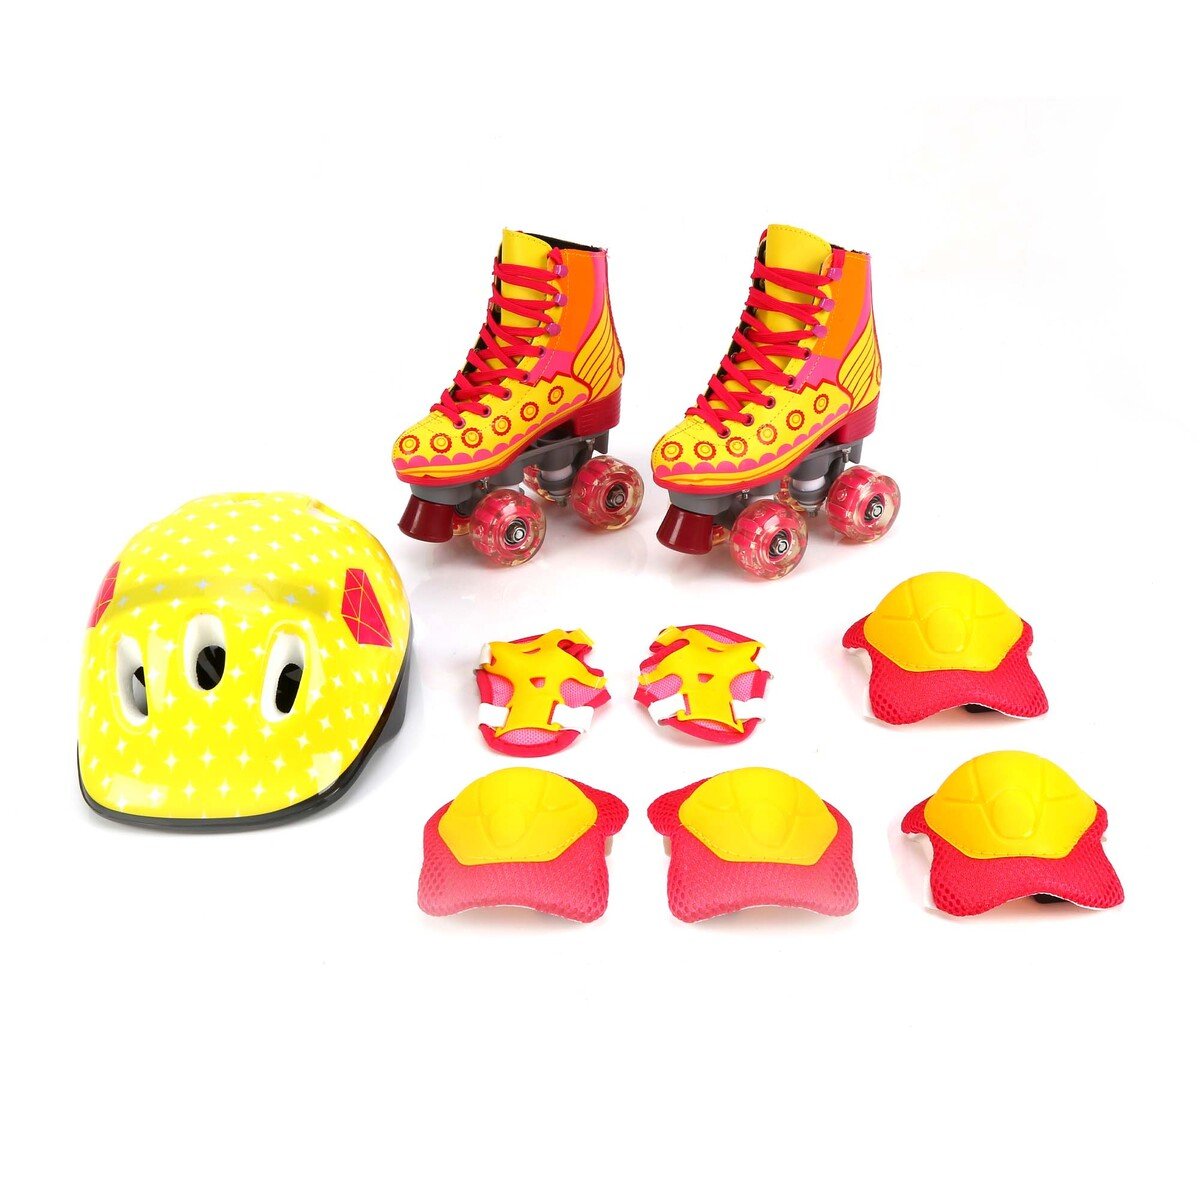 سبورتس إنك حذاء تزلج للأطفال بأربع عجلات و أضاءة LED + خوذة + طقم دعم للاكواع + طقم داعم للركبة HJ-F019 مقاس 30 سمول